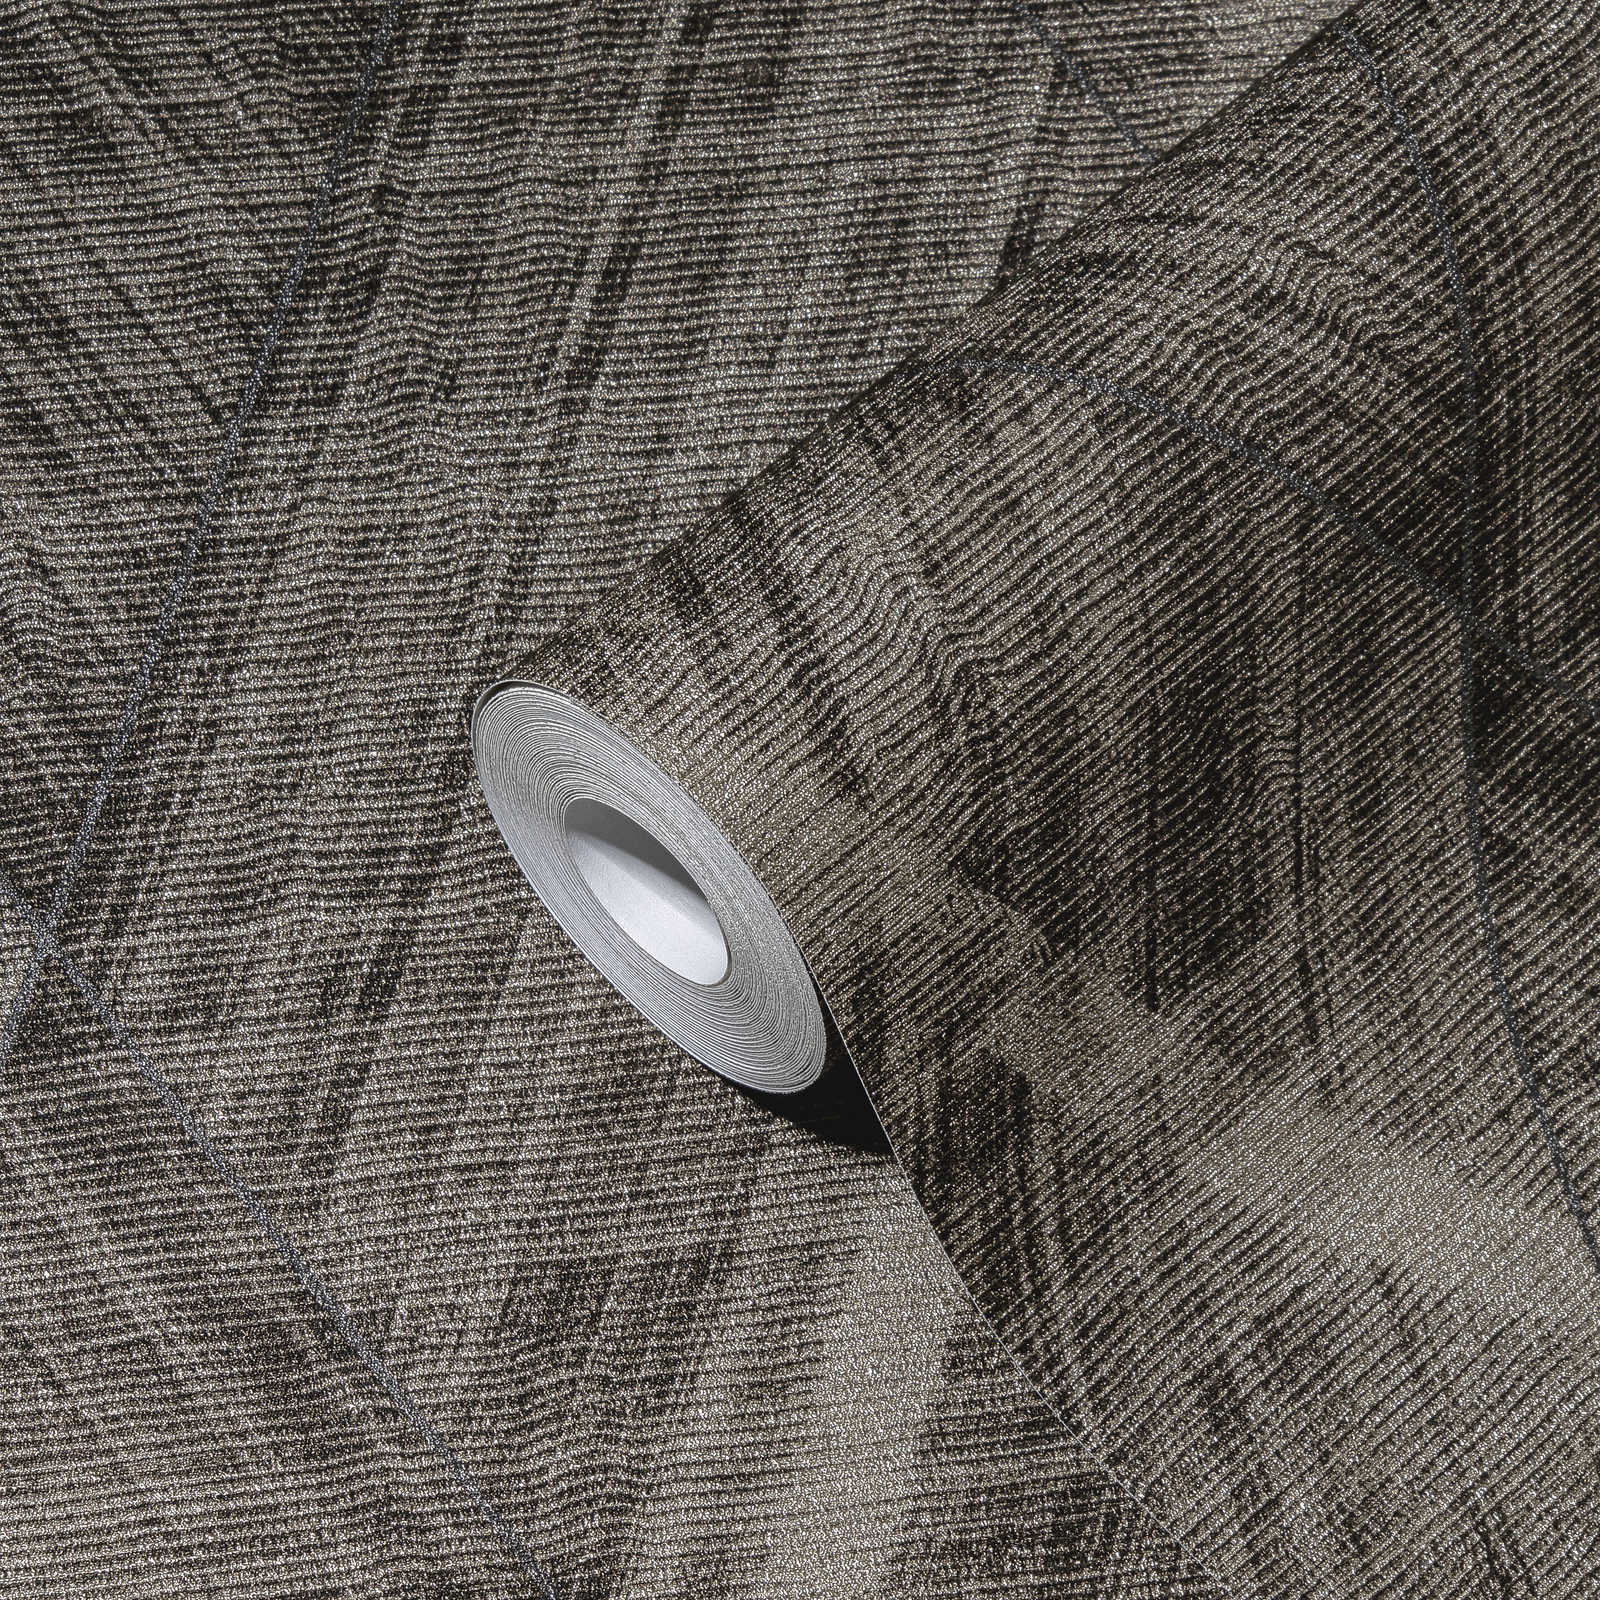             Papel pintado de aspecto textil con motivo de rombos - metálico, gris
        